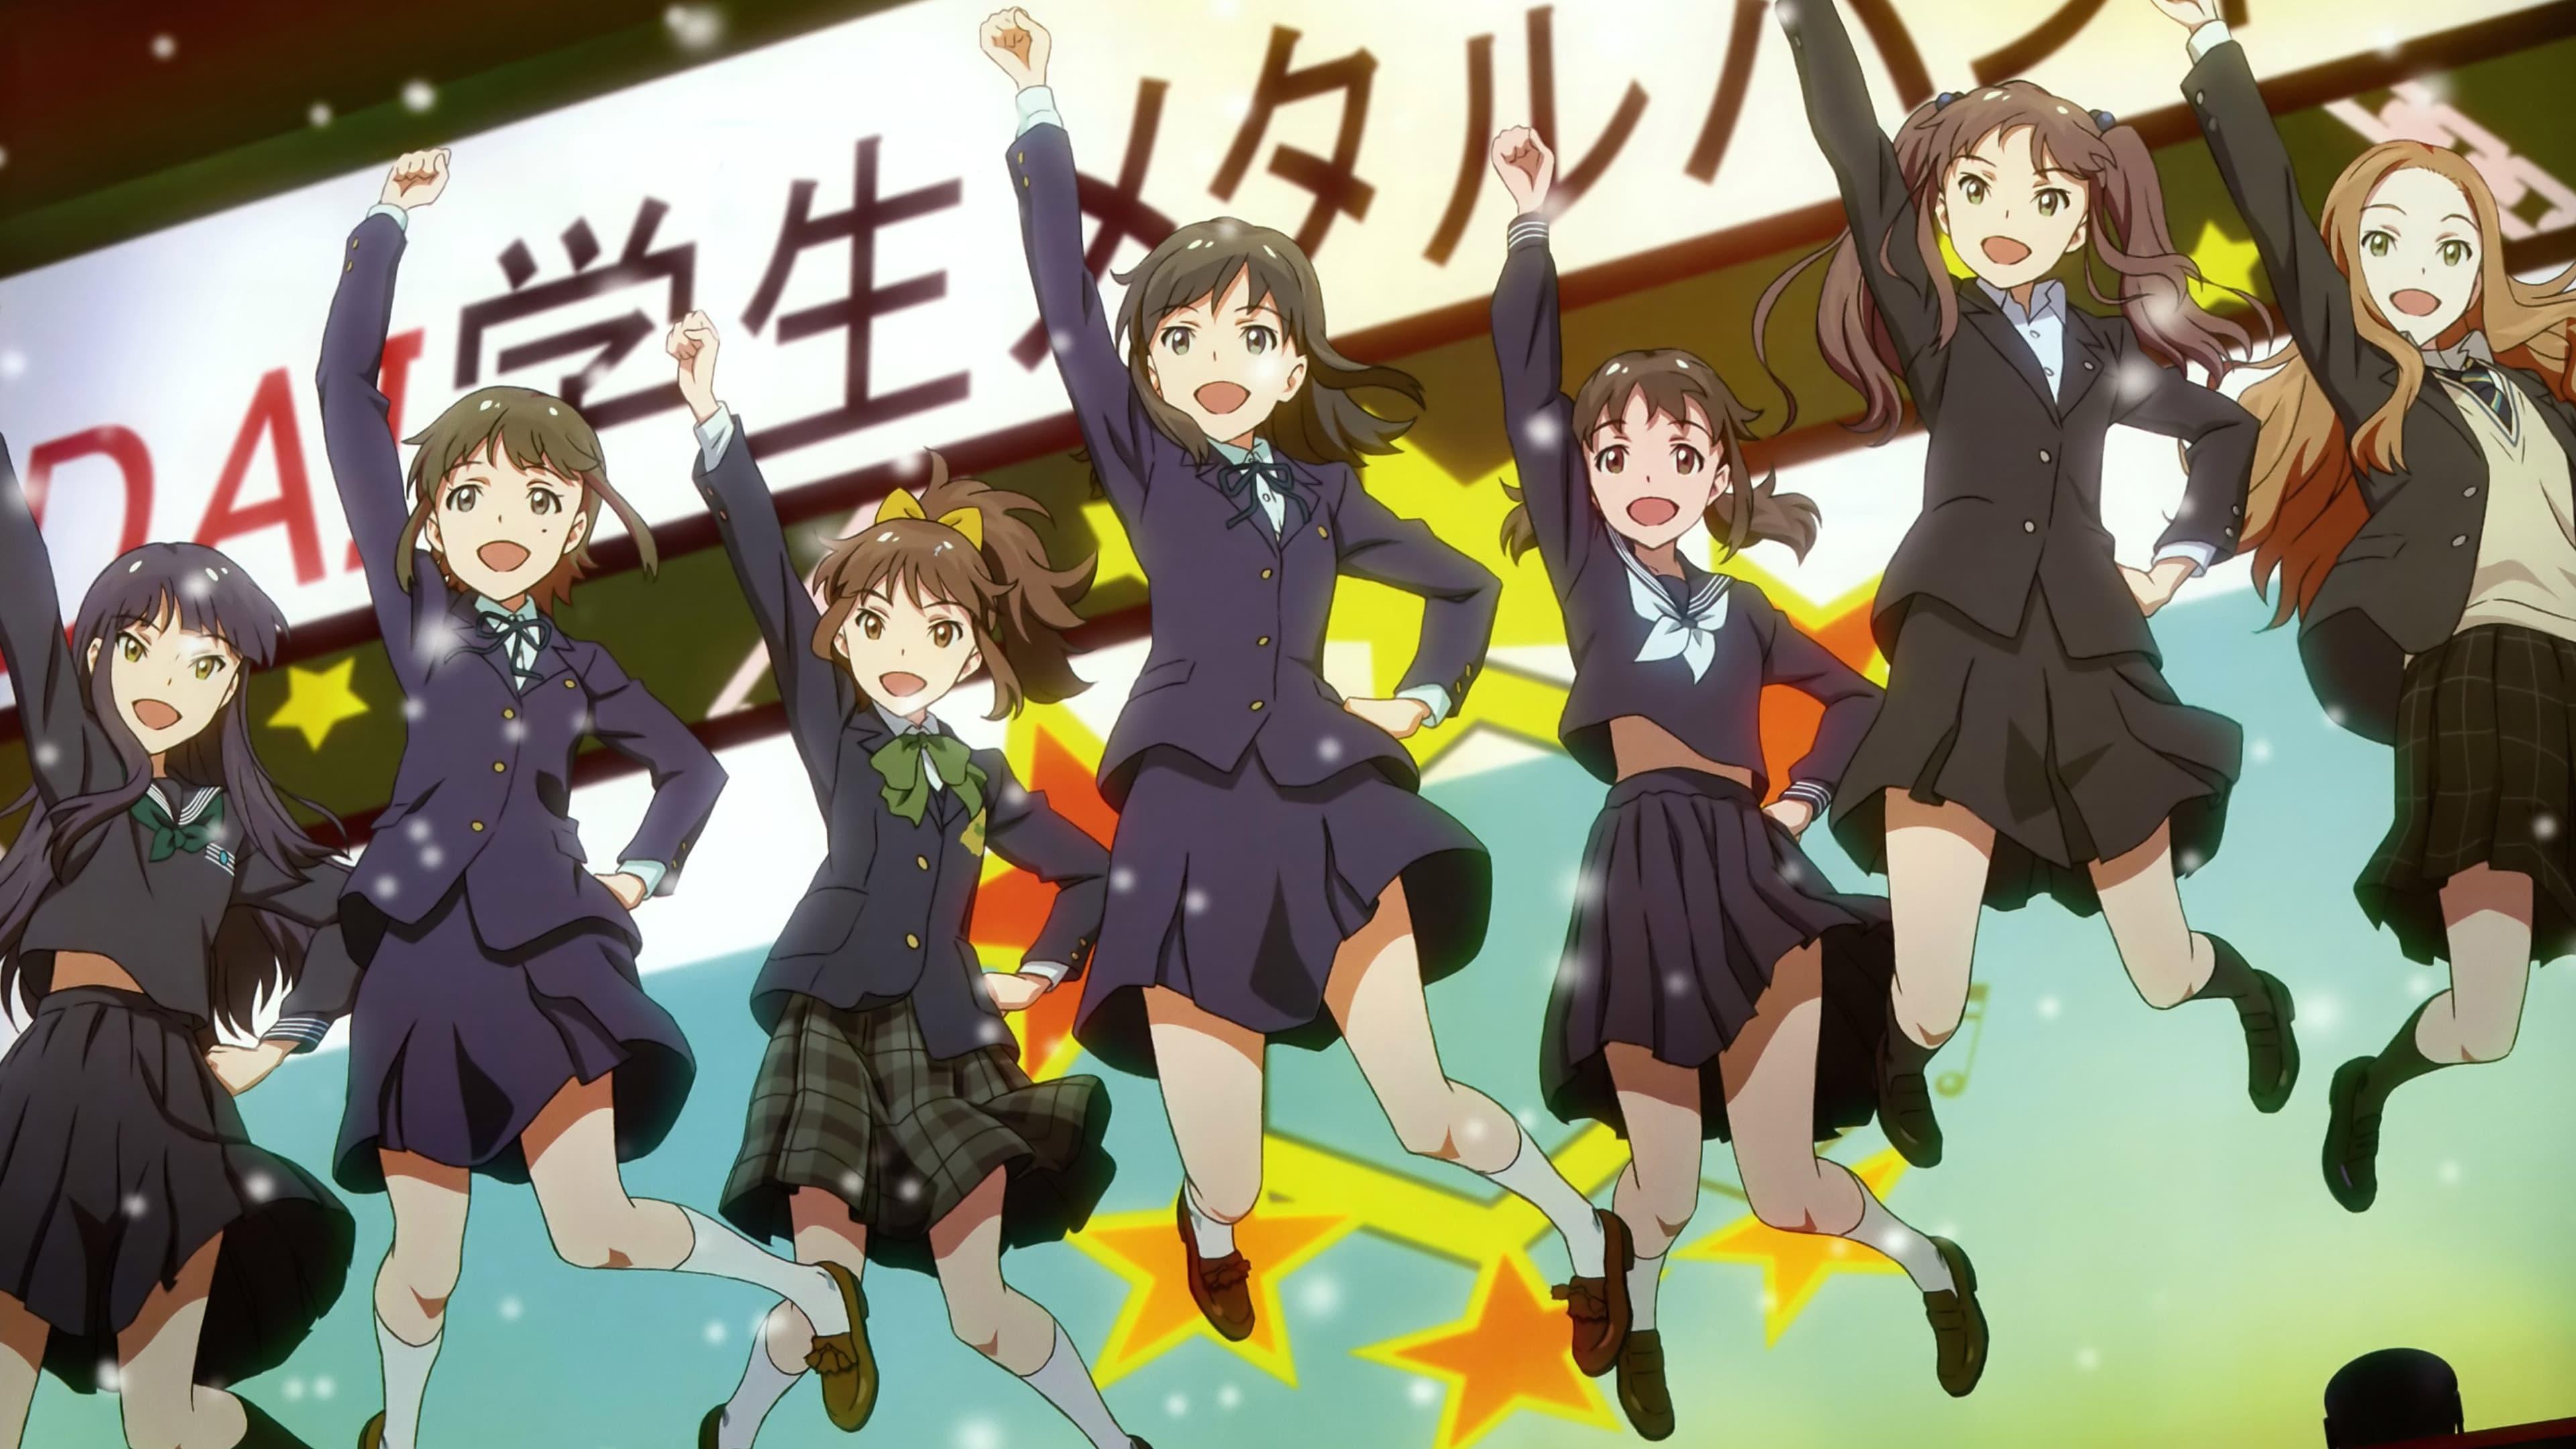 Wake Up, Girls! - Seven Idols backdrop